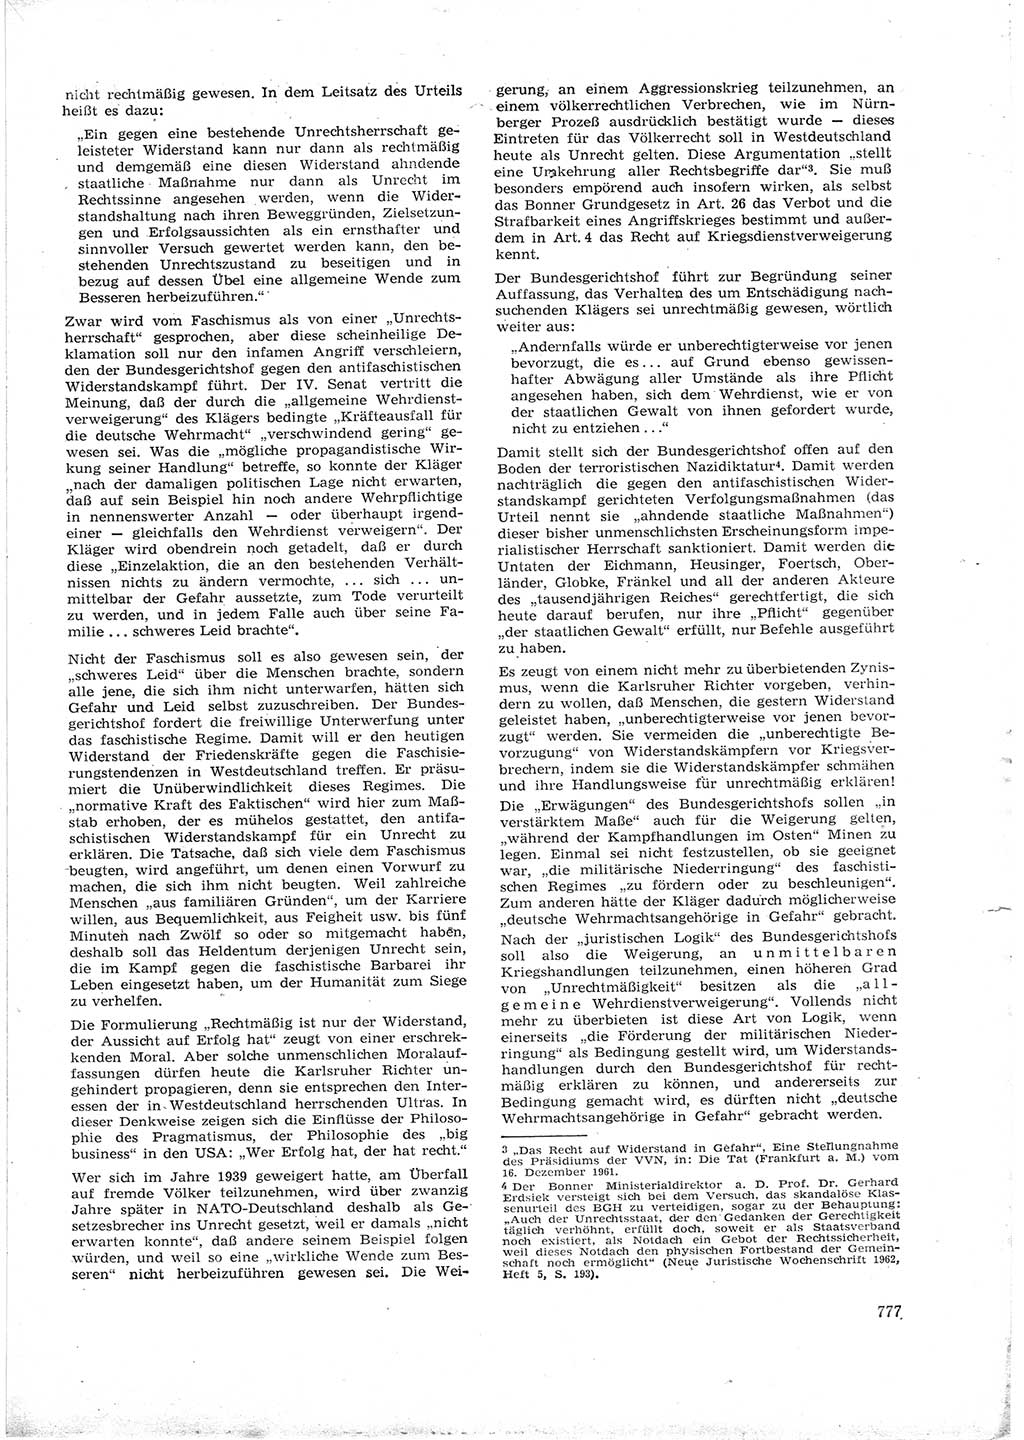 Neue Justiz (NJ), Zeitschrift für Recht und Rechtswissenschaft [Deutsche Demokratische Republik (DDR)], 16. Jahrgang 1962, Seite 777 (NJ DDR 1962, S. 777)